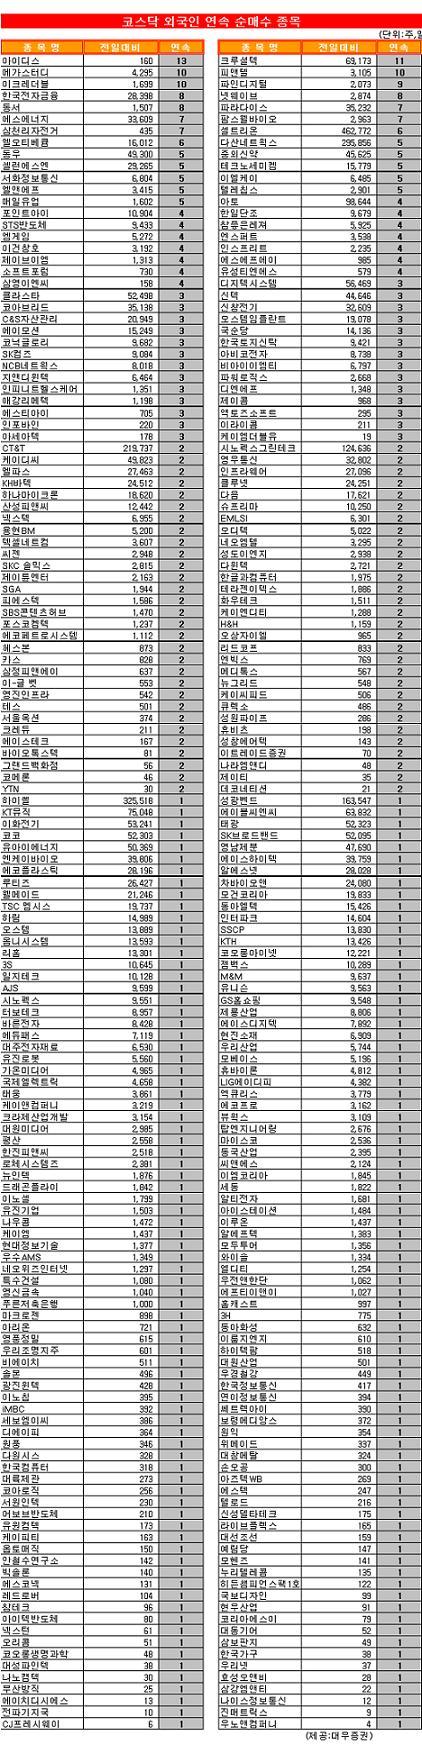 [표]코스닥 외국인 연속 순매수 종목-1일